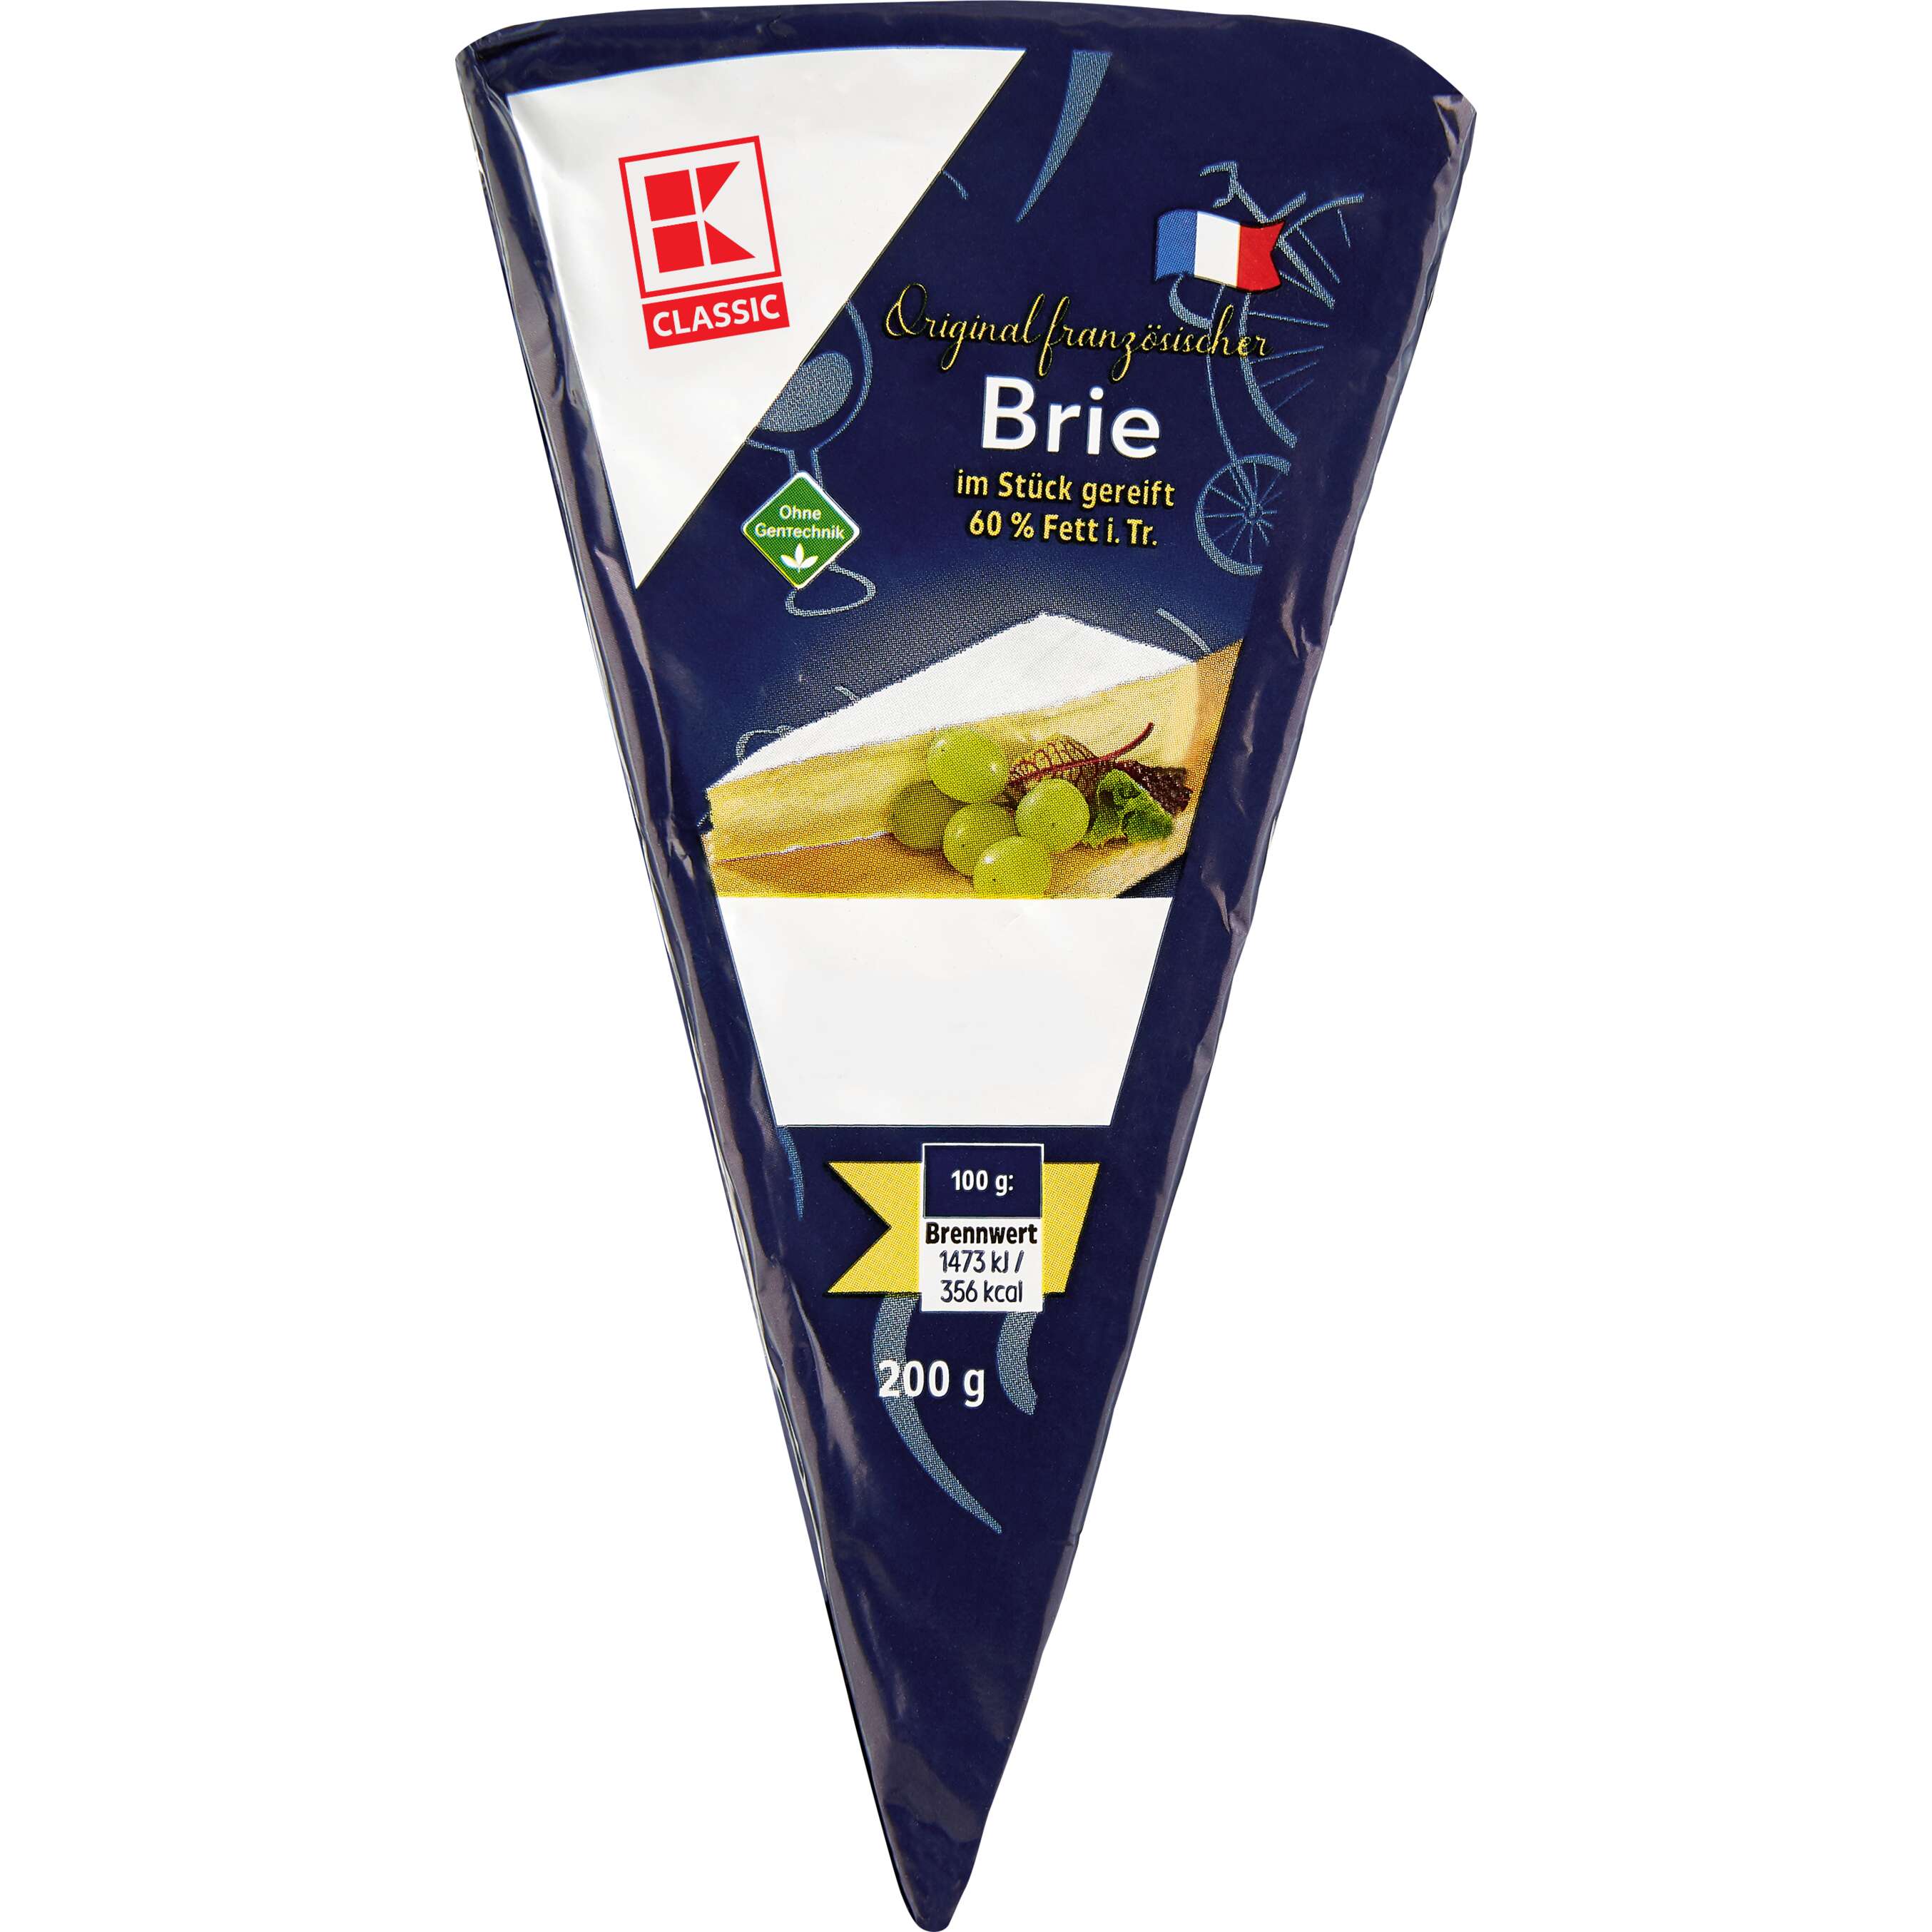 Zobrazit nabídku K_CLASSIC Brie de France Přírodní zrající sýr